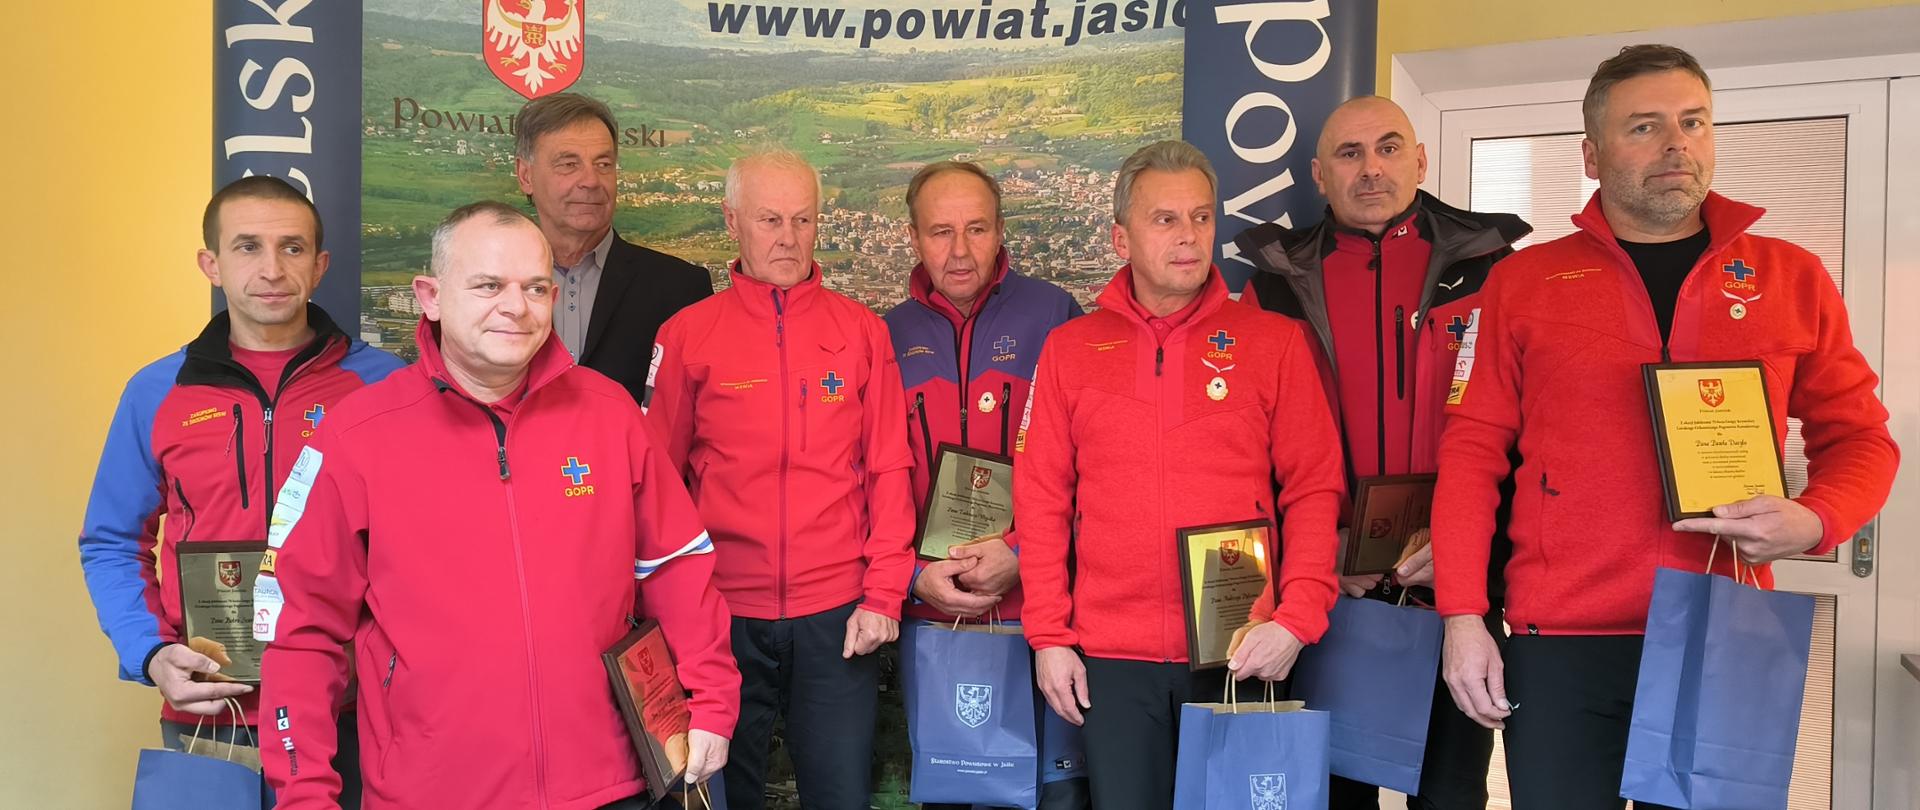 Zarząd Powiatu w Jaśle odznaczył członków Grupy Krynickiej GOPR